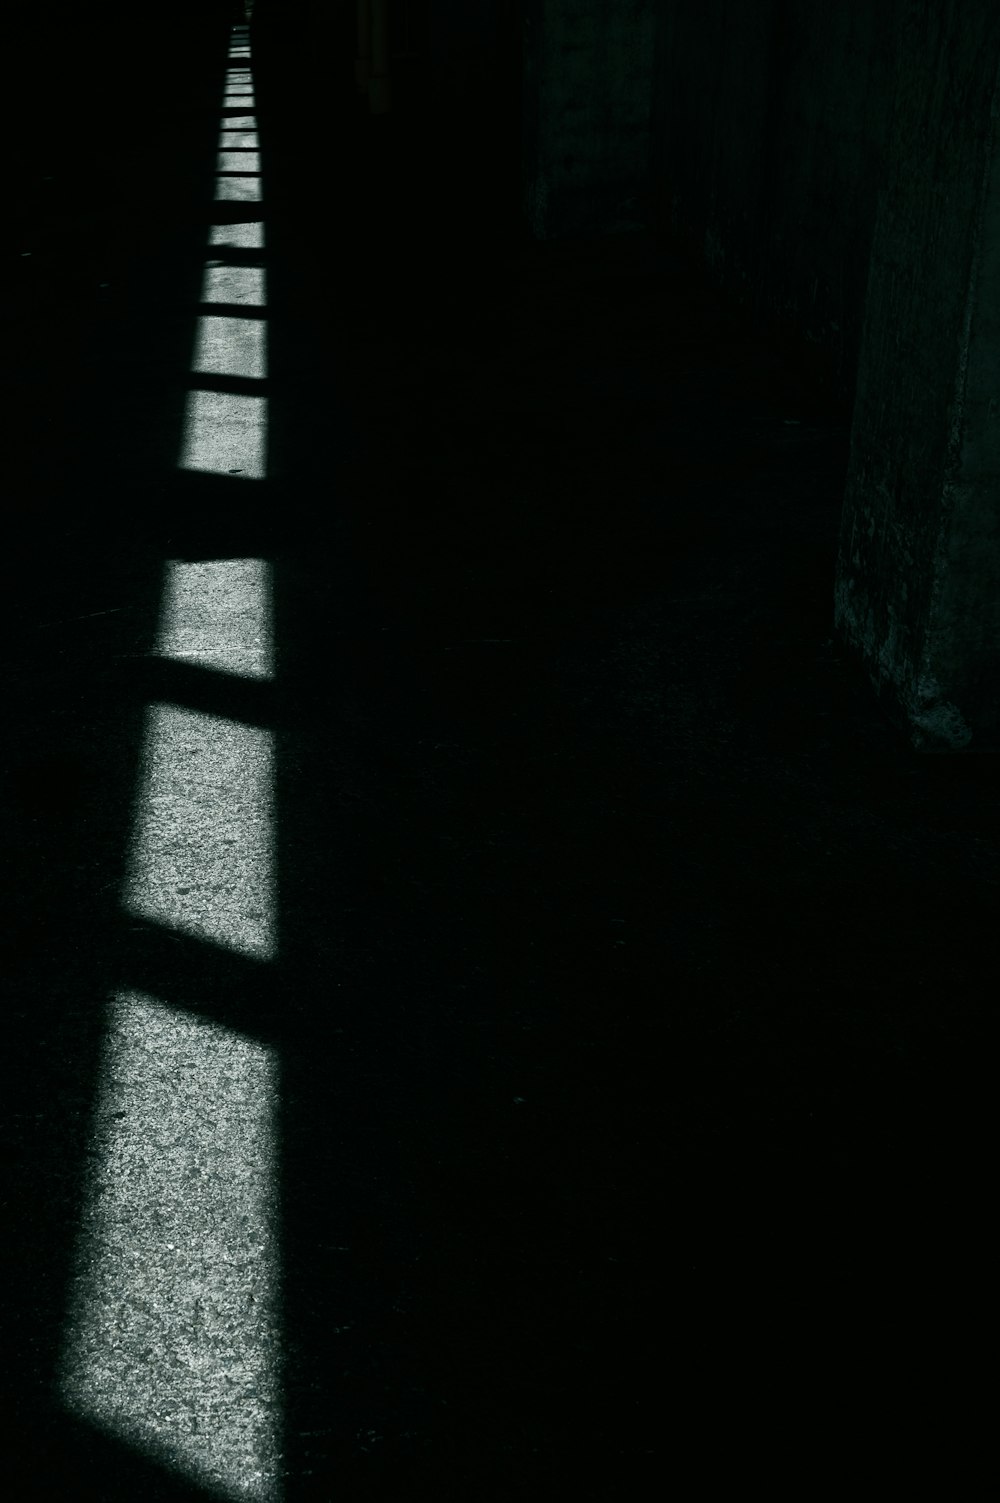 a dark hallway with long shadows on the floor